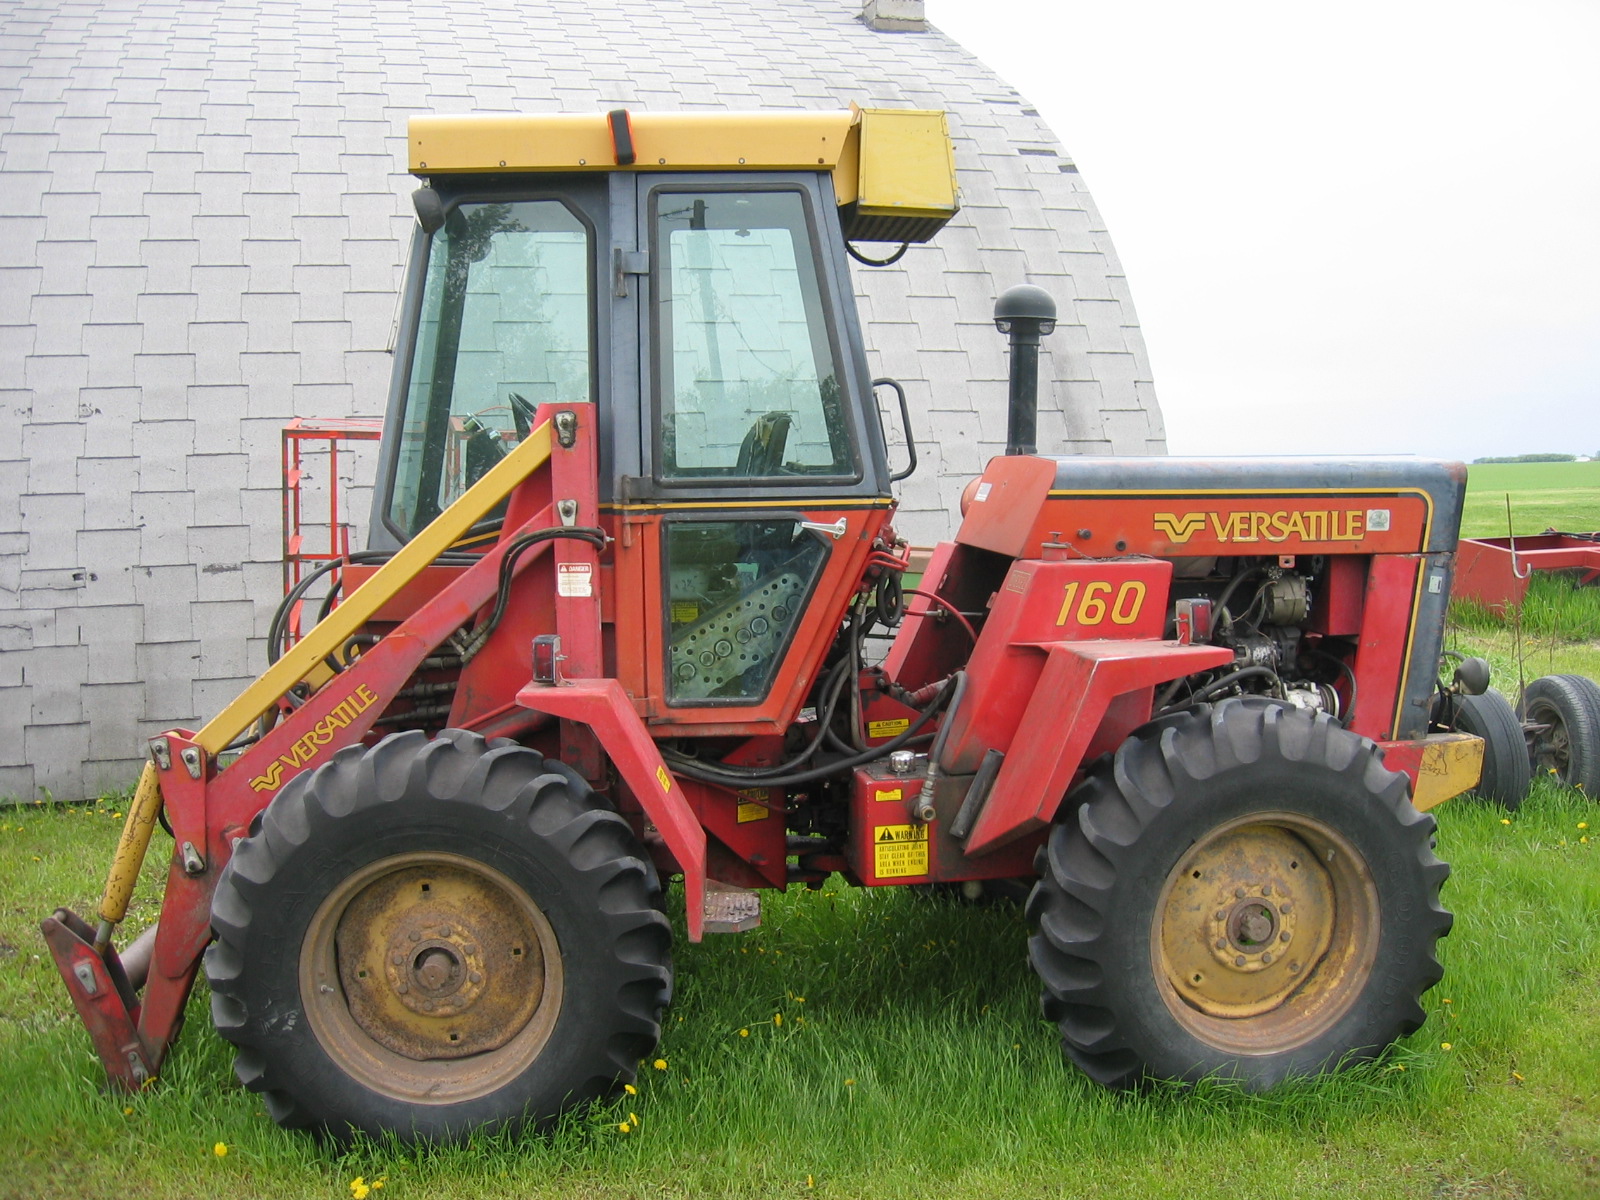 Versatile 160 Tractor